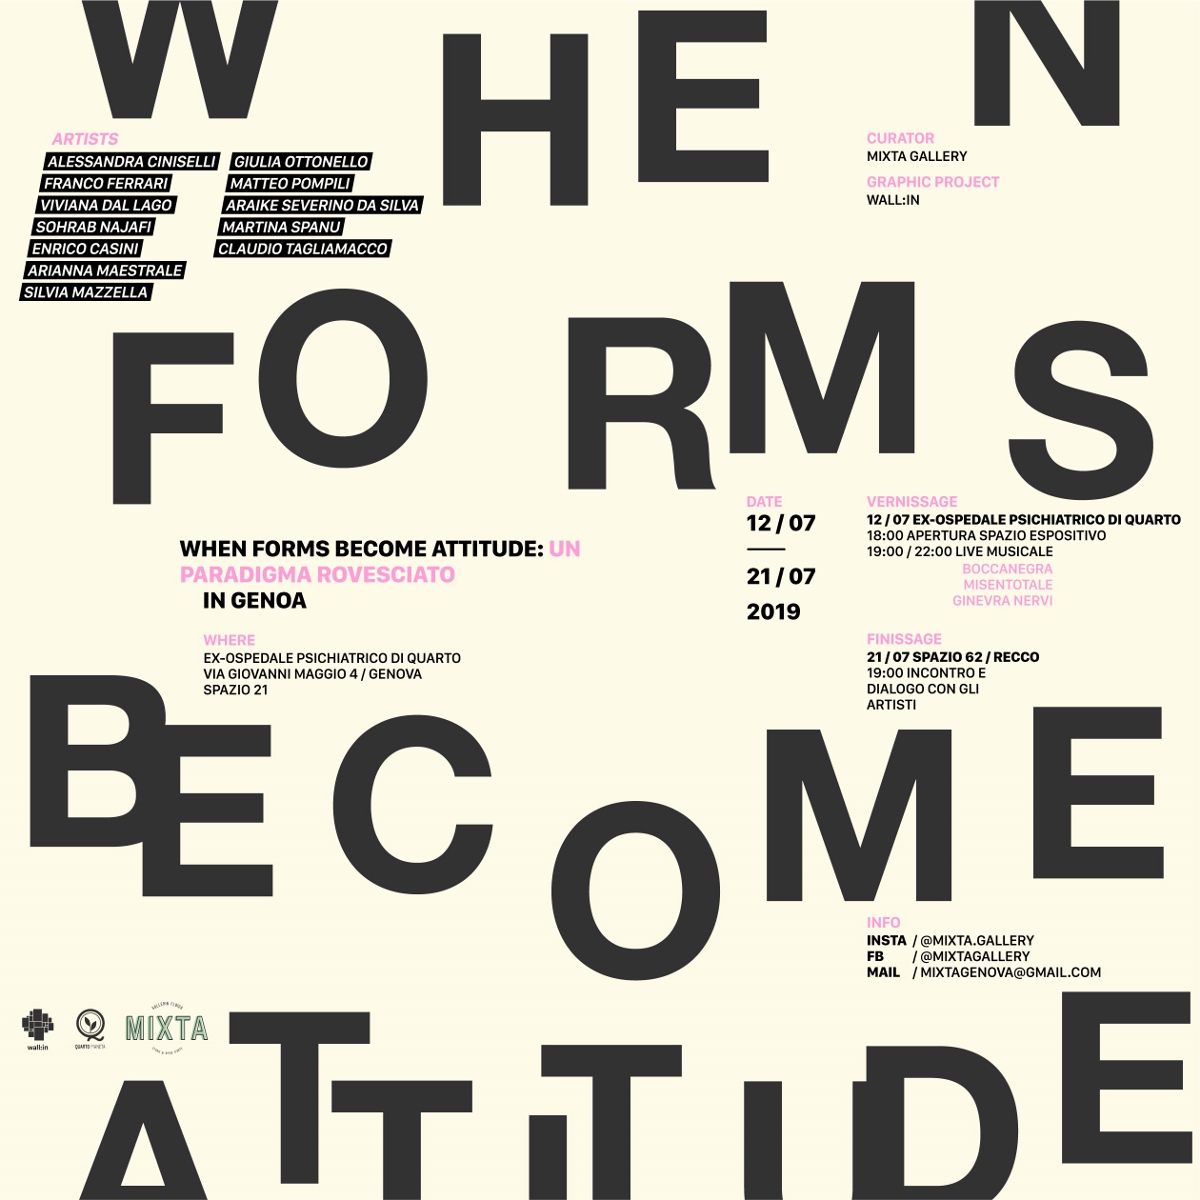 When Forms Become Attitude - un paradigma rovesciato